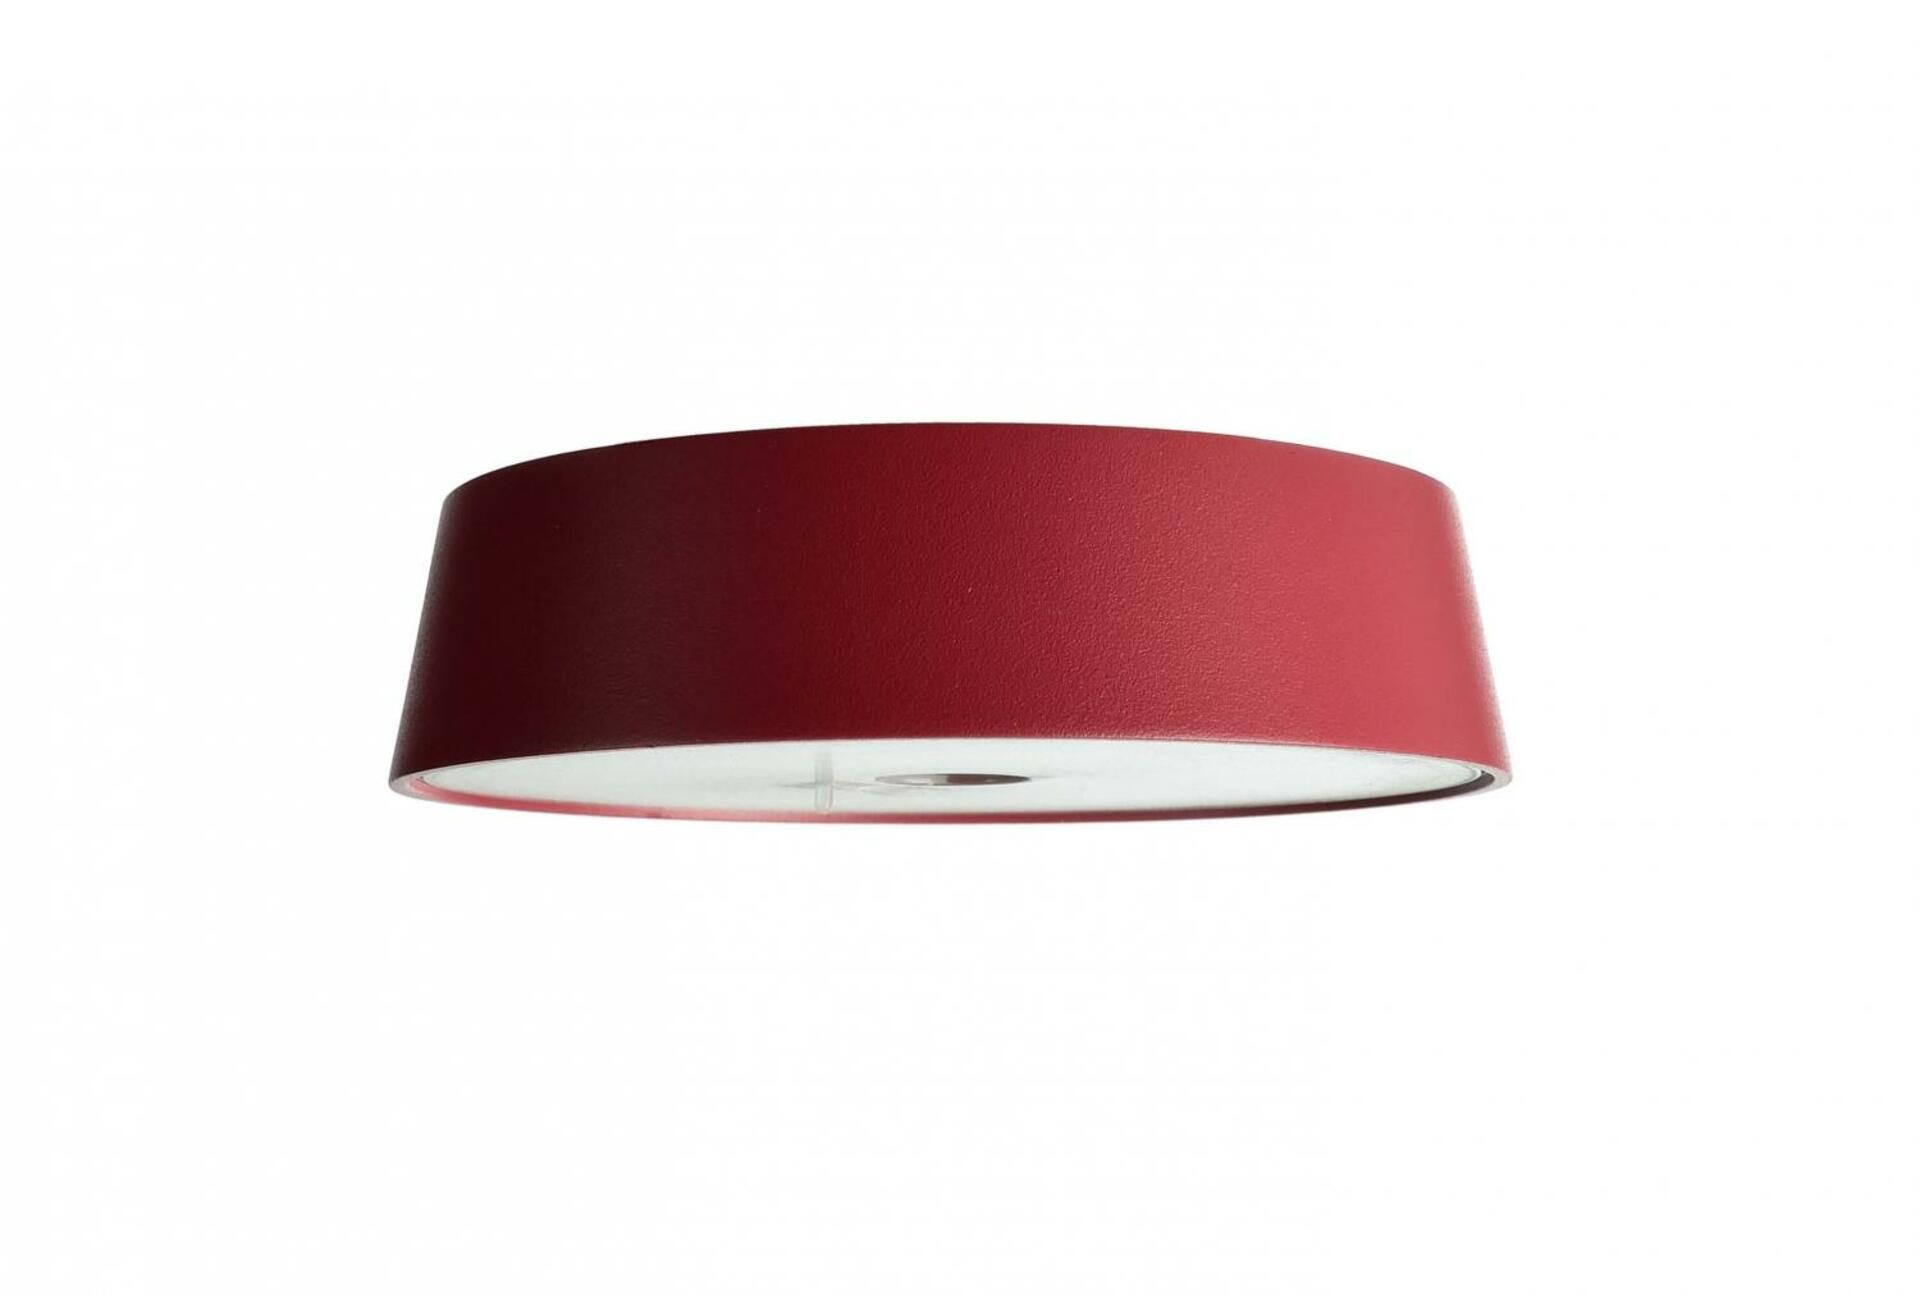 Light Impressions VÝPRODEJ VZORKU Deko-Light stolní lampa hlava pro magnetsvítidla Miram rubínová červená 3,7V DC 2,20 W 3000 K 196 lm RAL 3003 346034